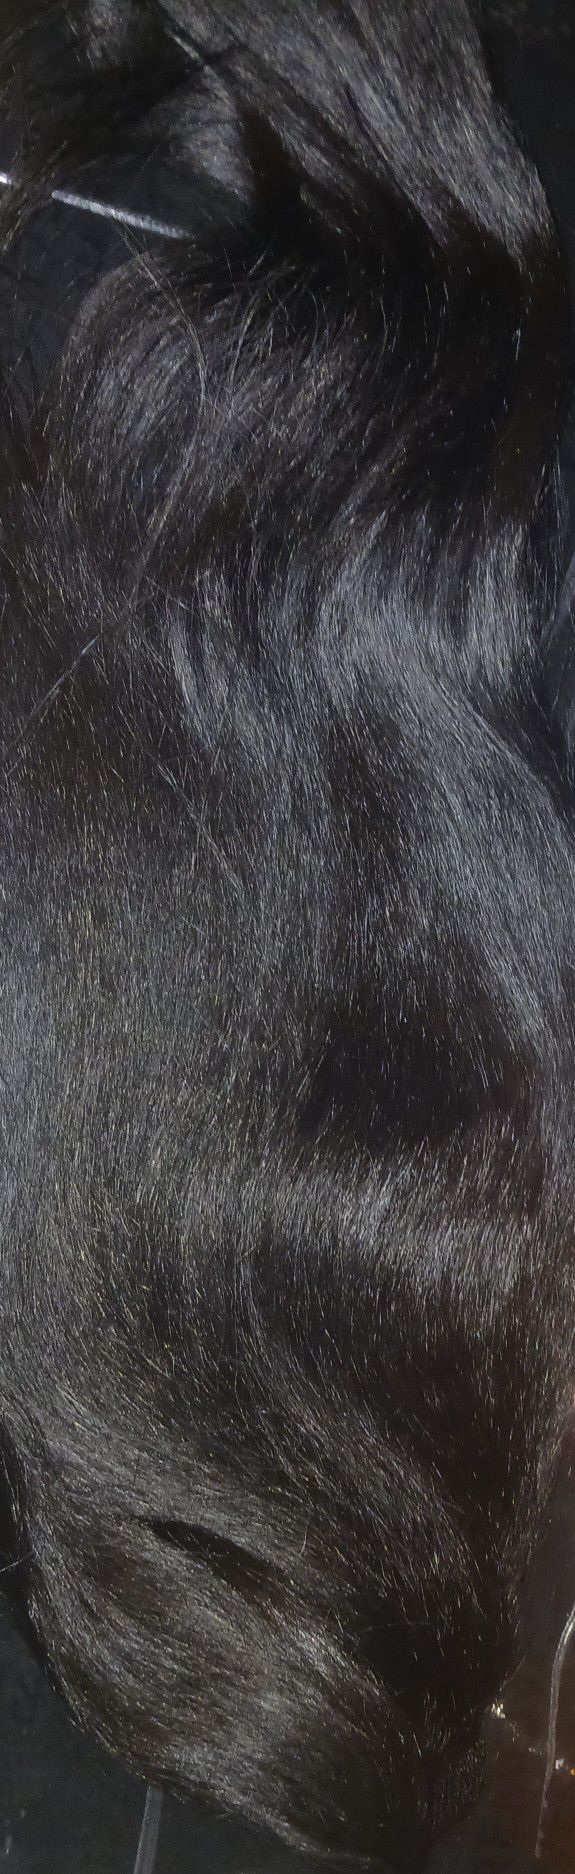 Black Hair Ponytail